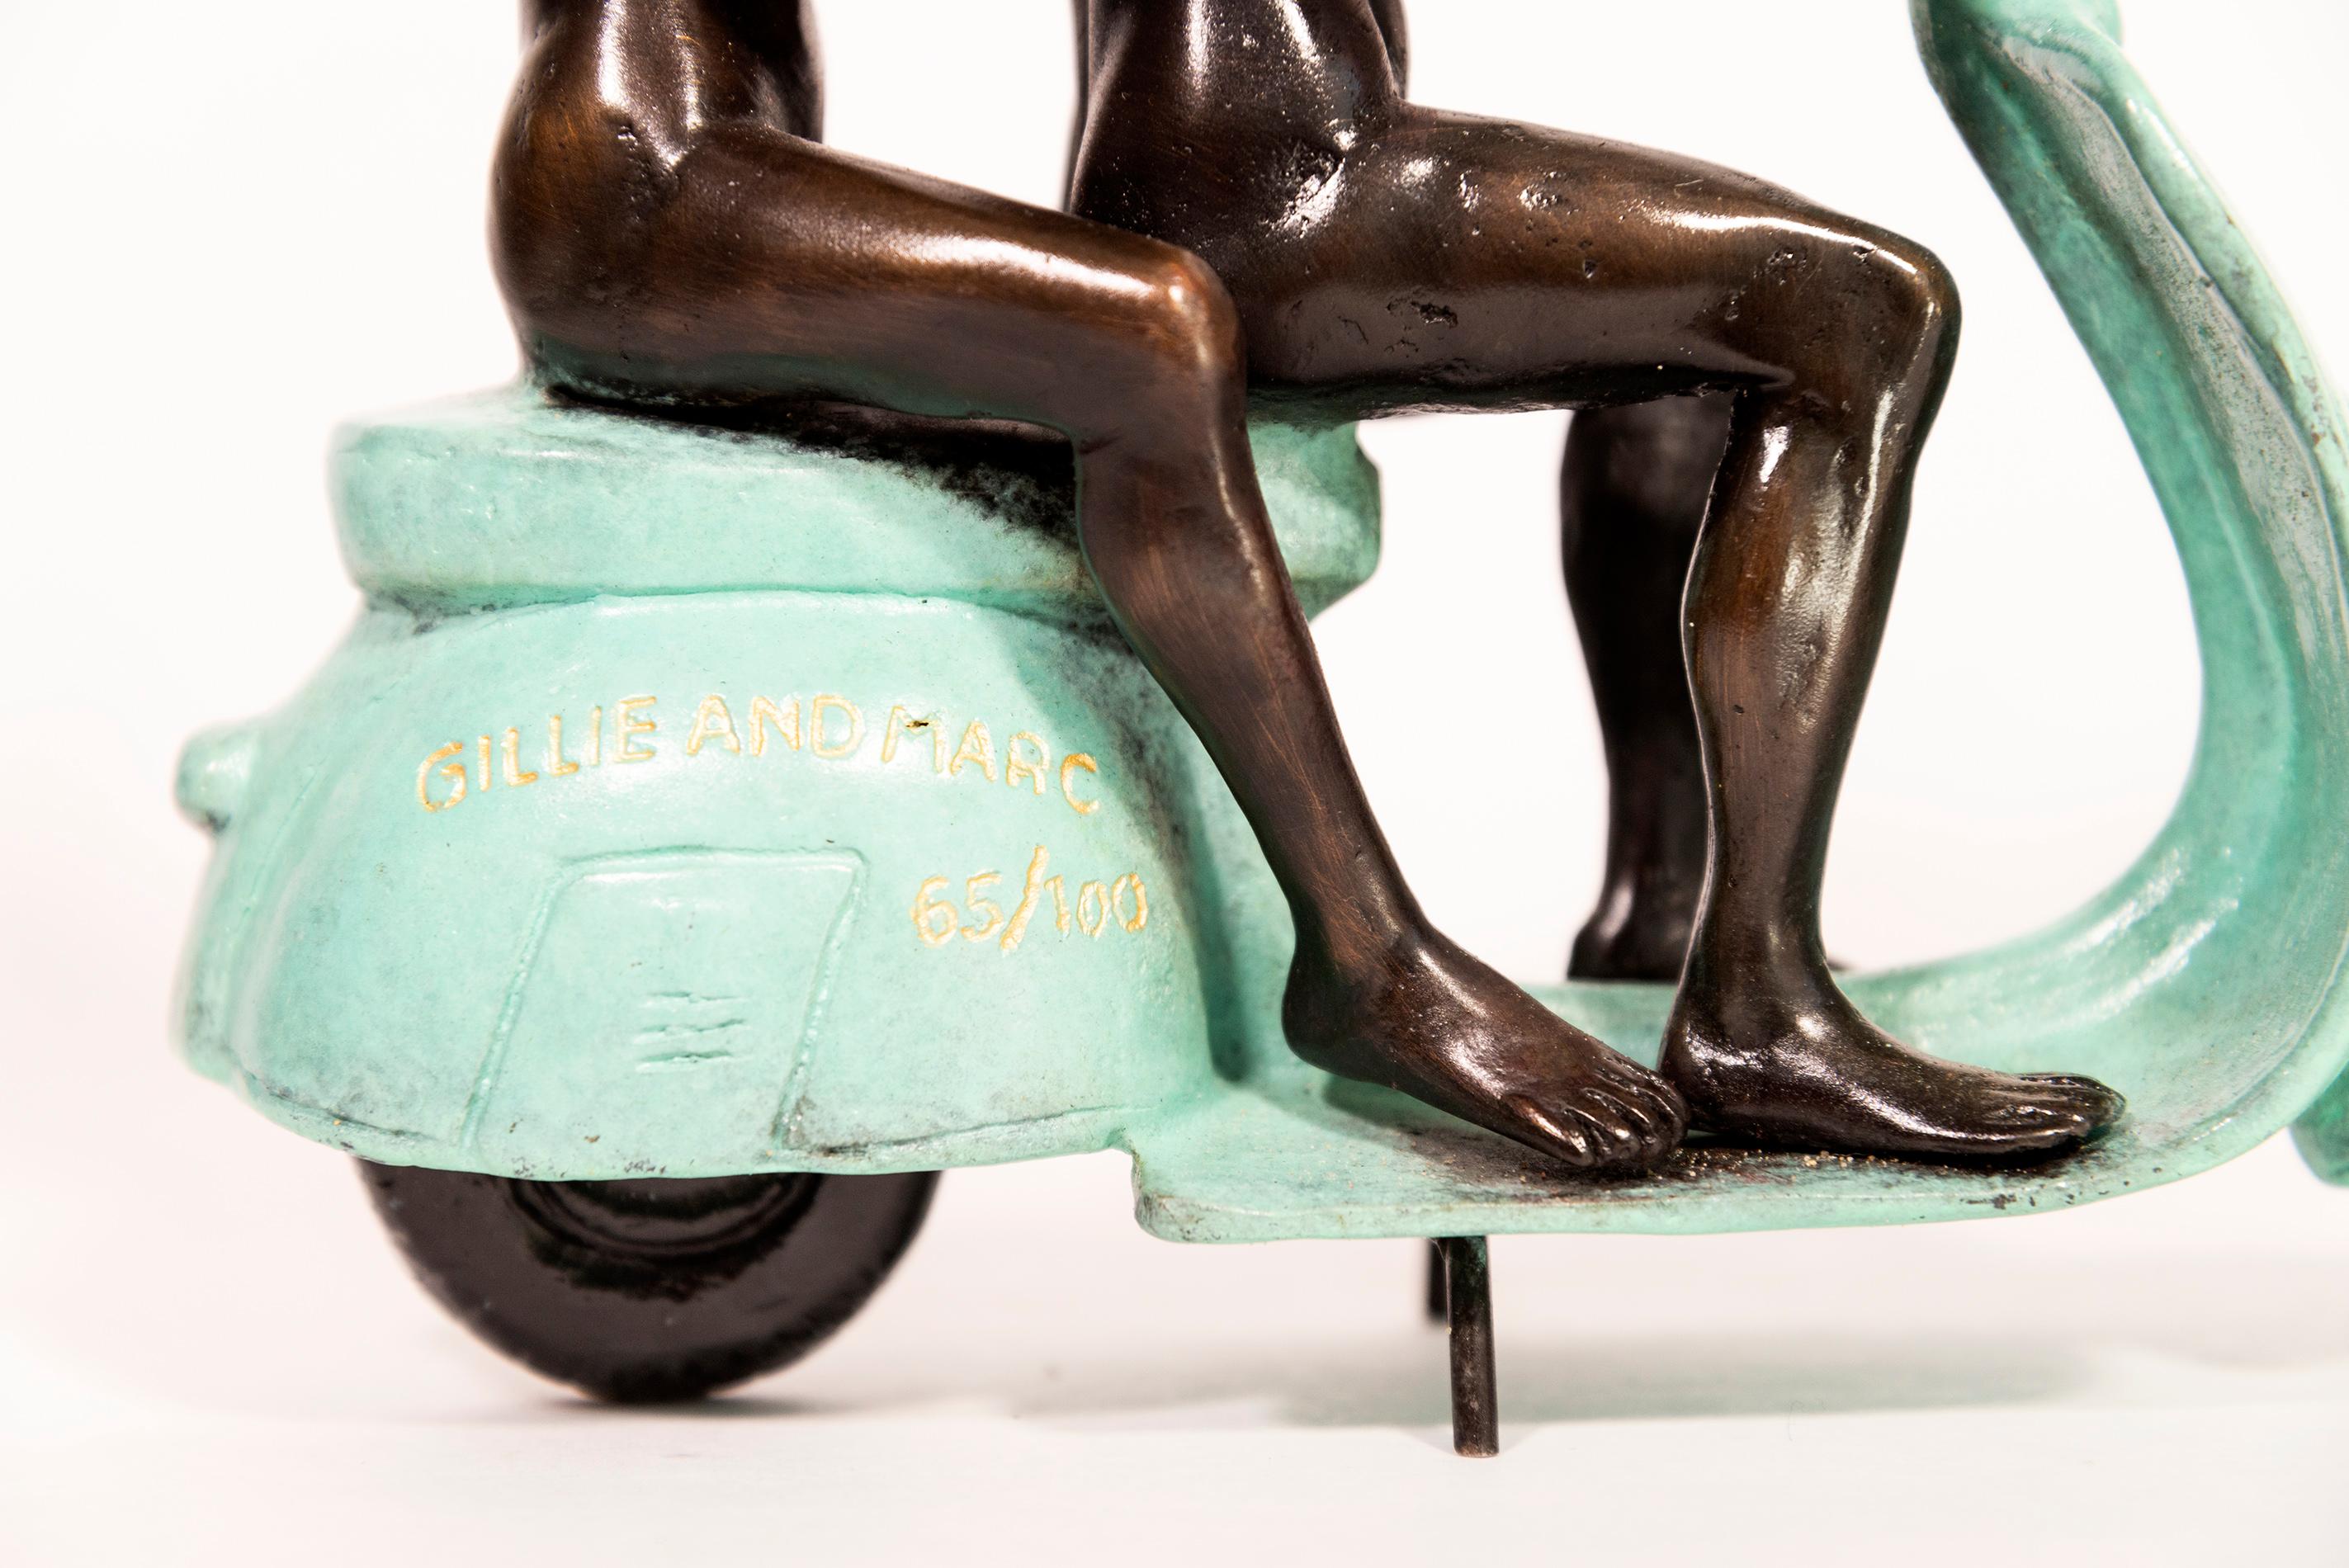 Ils étaient d'authentiques cavaliers Vespa à Rome 65/100 - sculpture figurative en bronze - Contemporain Sculpture par Gillie and Marc Schattner